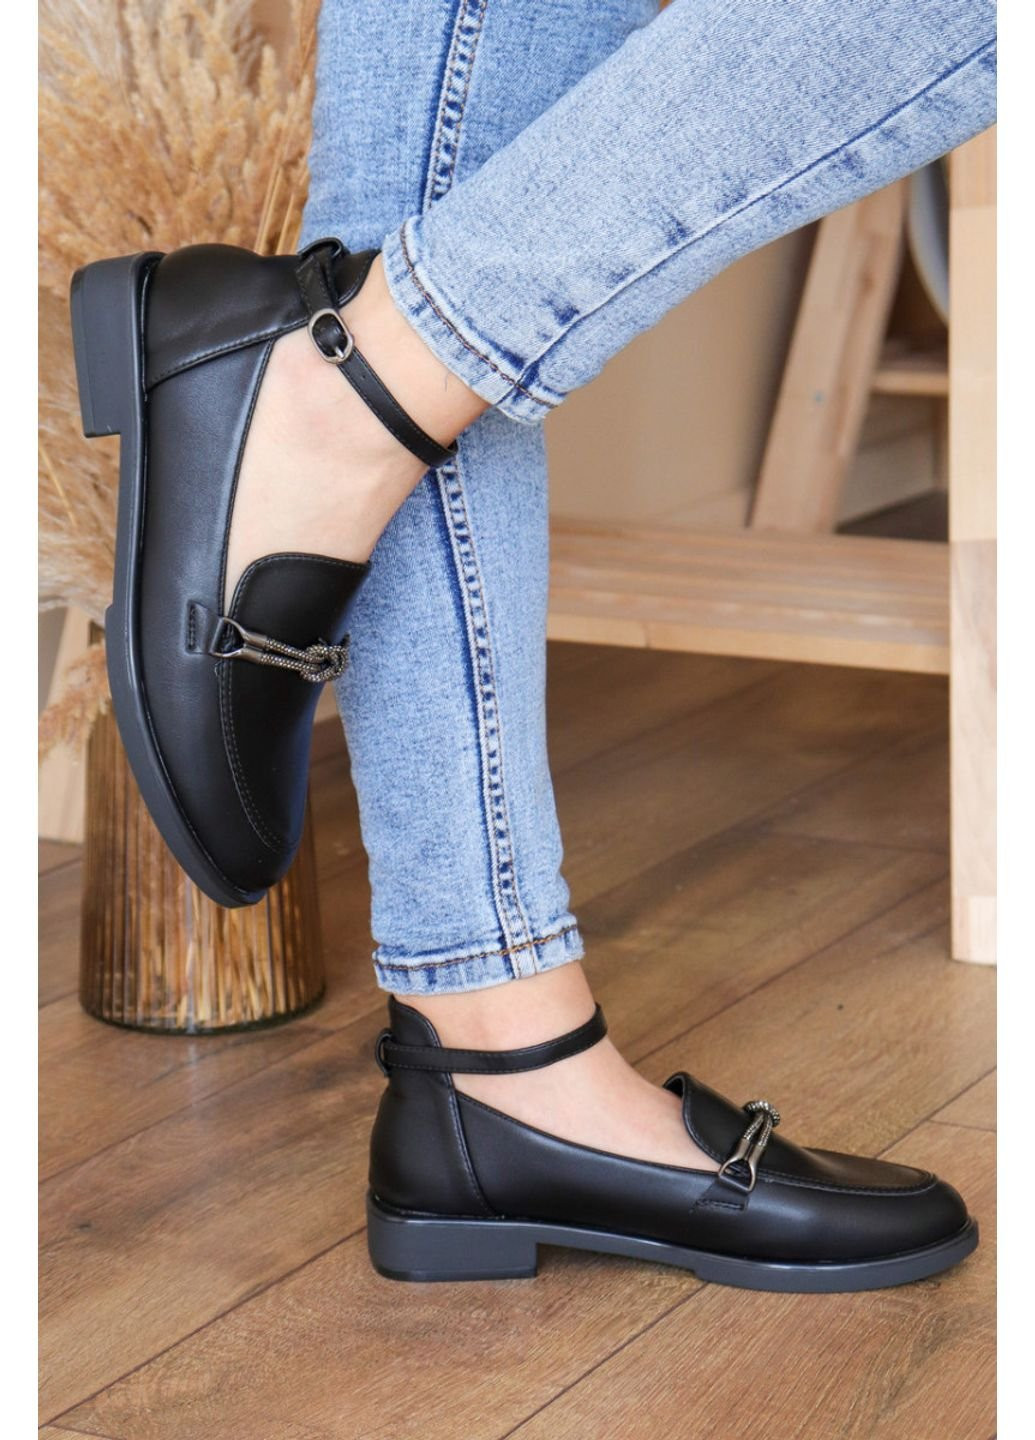 Туфли женские Geron 3164 39 25 см Черный Fashion